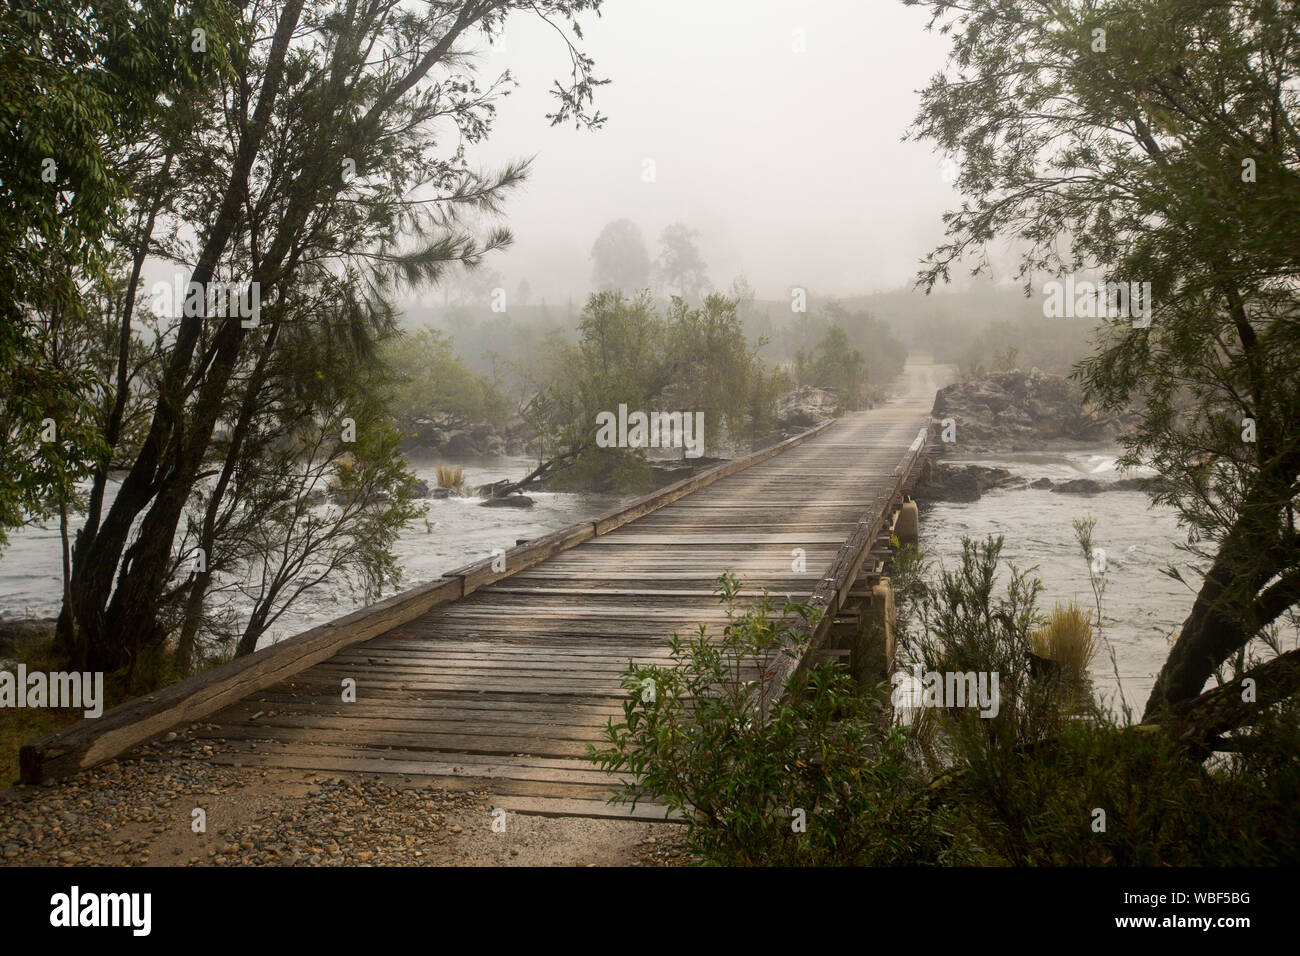 Lunga e stretta strada in legno ponte che attraversa il rock-disseminata Mann fiume orlate da alberi nativi e scomparire nella nebbia di mattina presto in NSW Australia Foto Stock